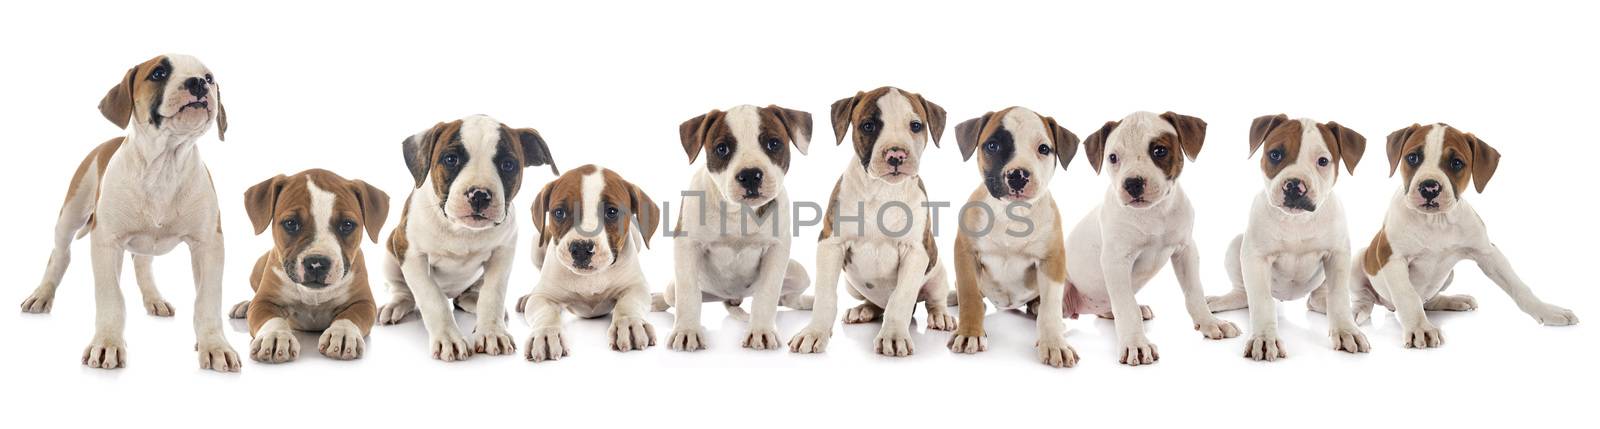 puppies american bulldog by cynoclub